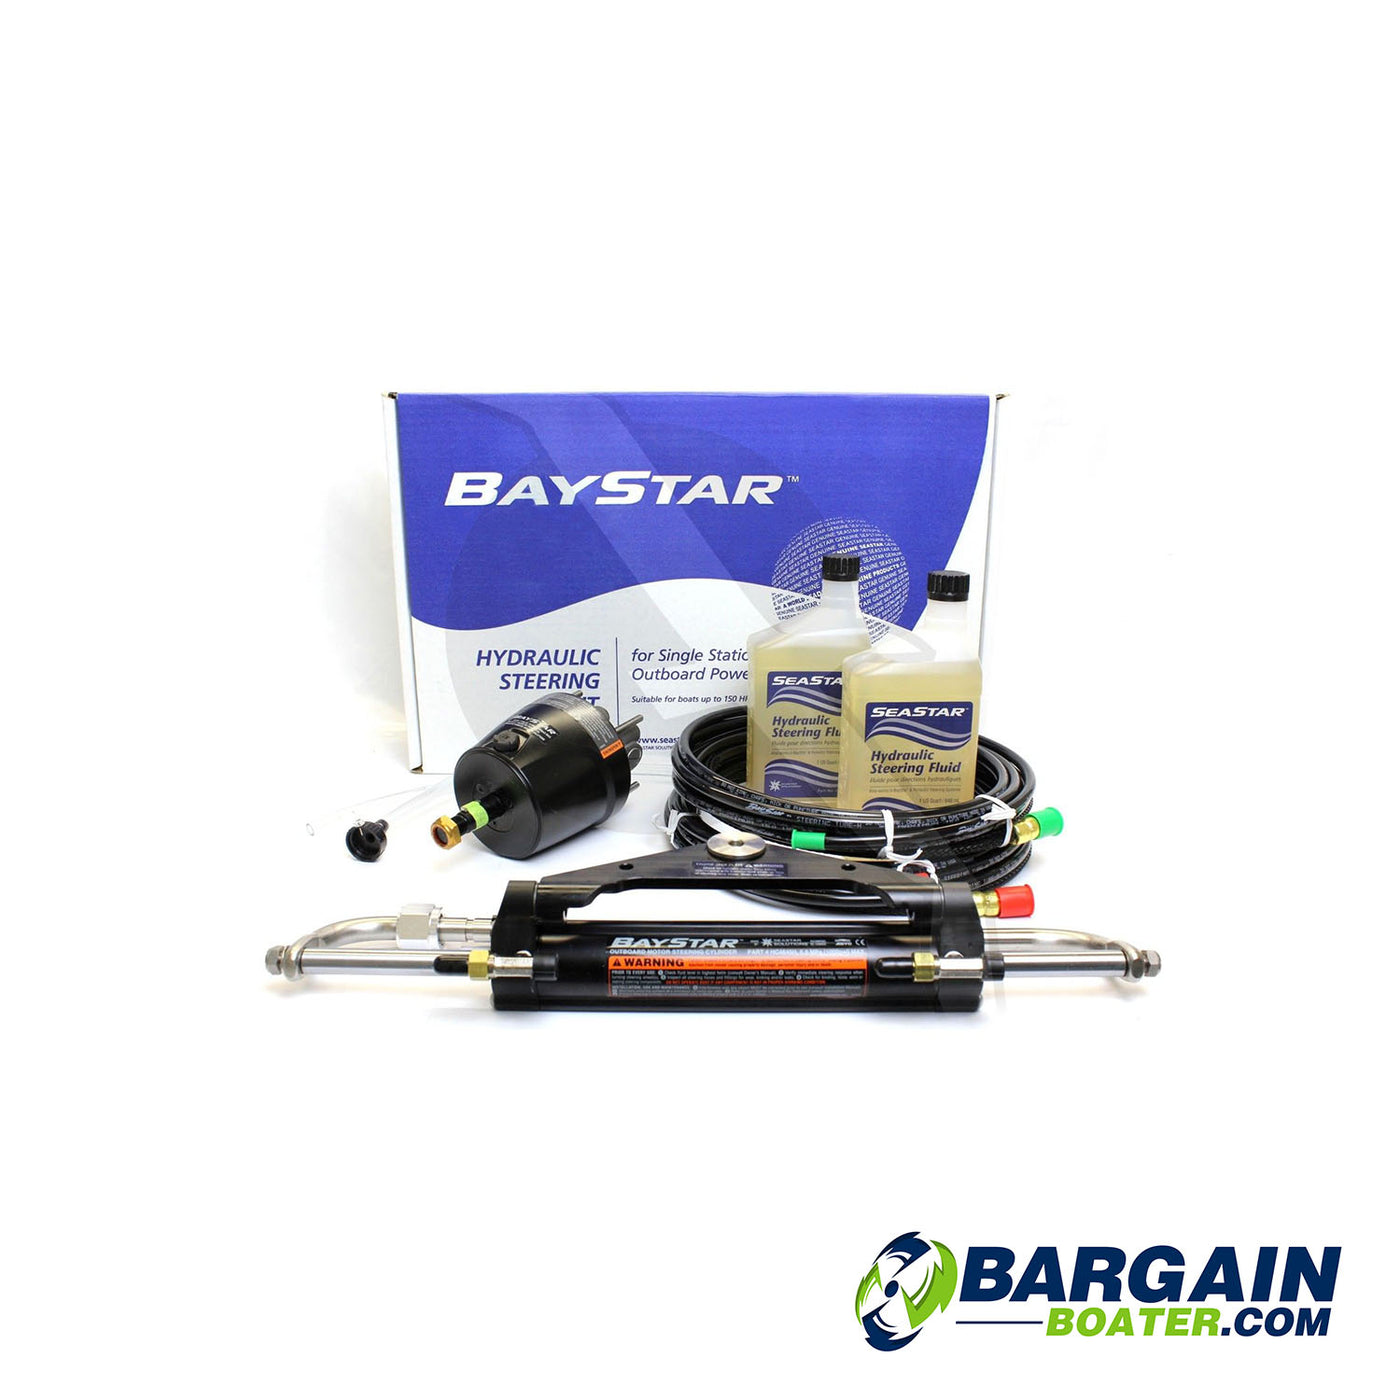 SeaStar Baystar Compact Hydraulic Steering System